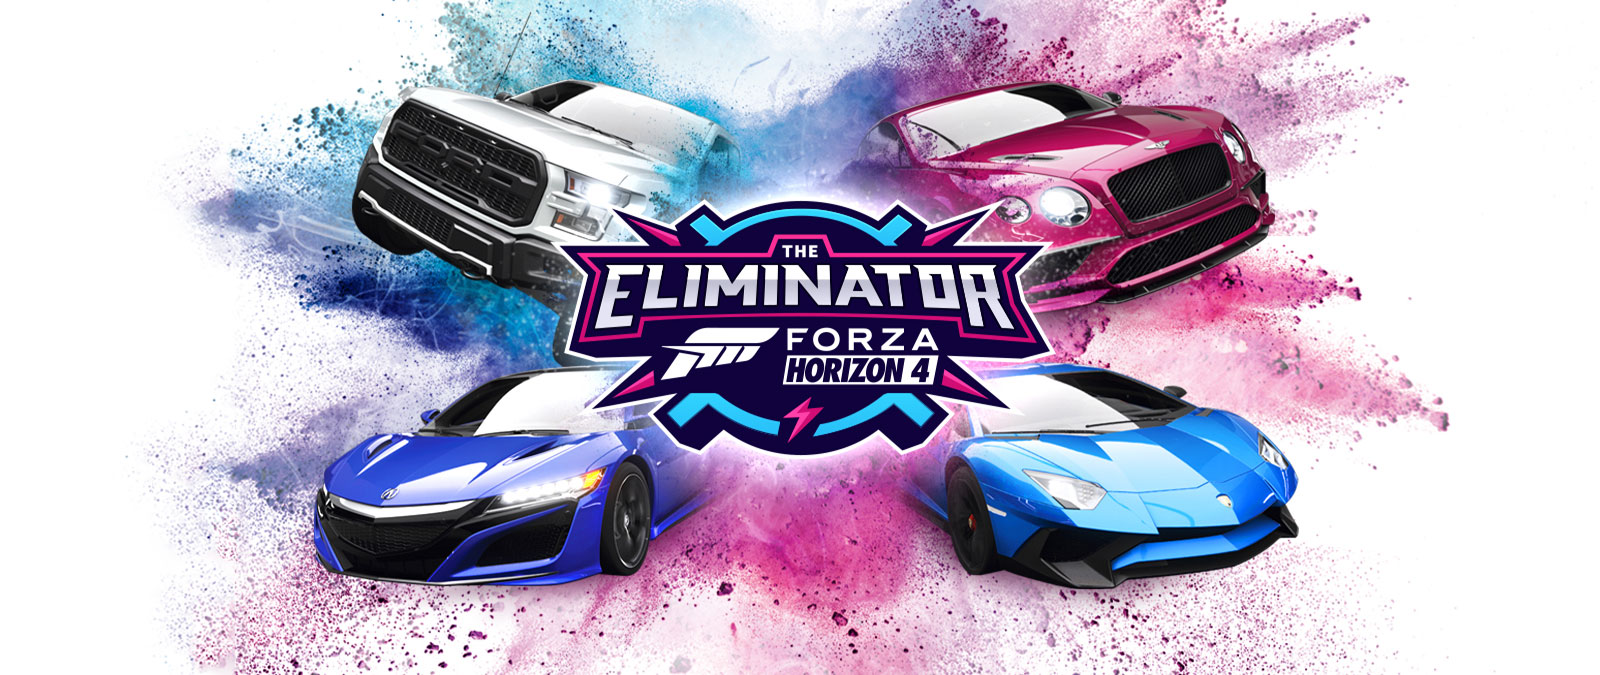 Eliminator, Forza Horizon 4 -logo, neljä autoa, joiden ympärillä on sinistä ja vaaleanpunaista jauhetta